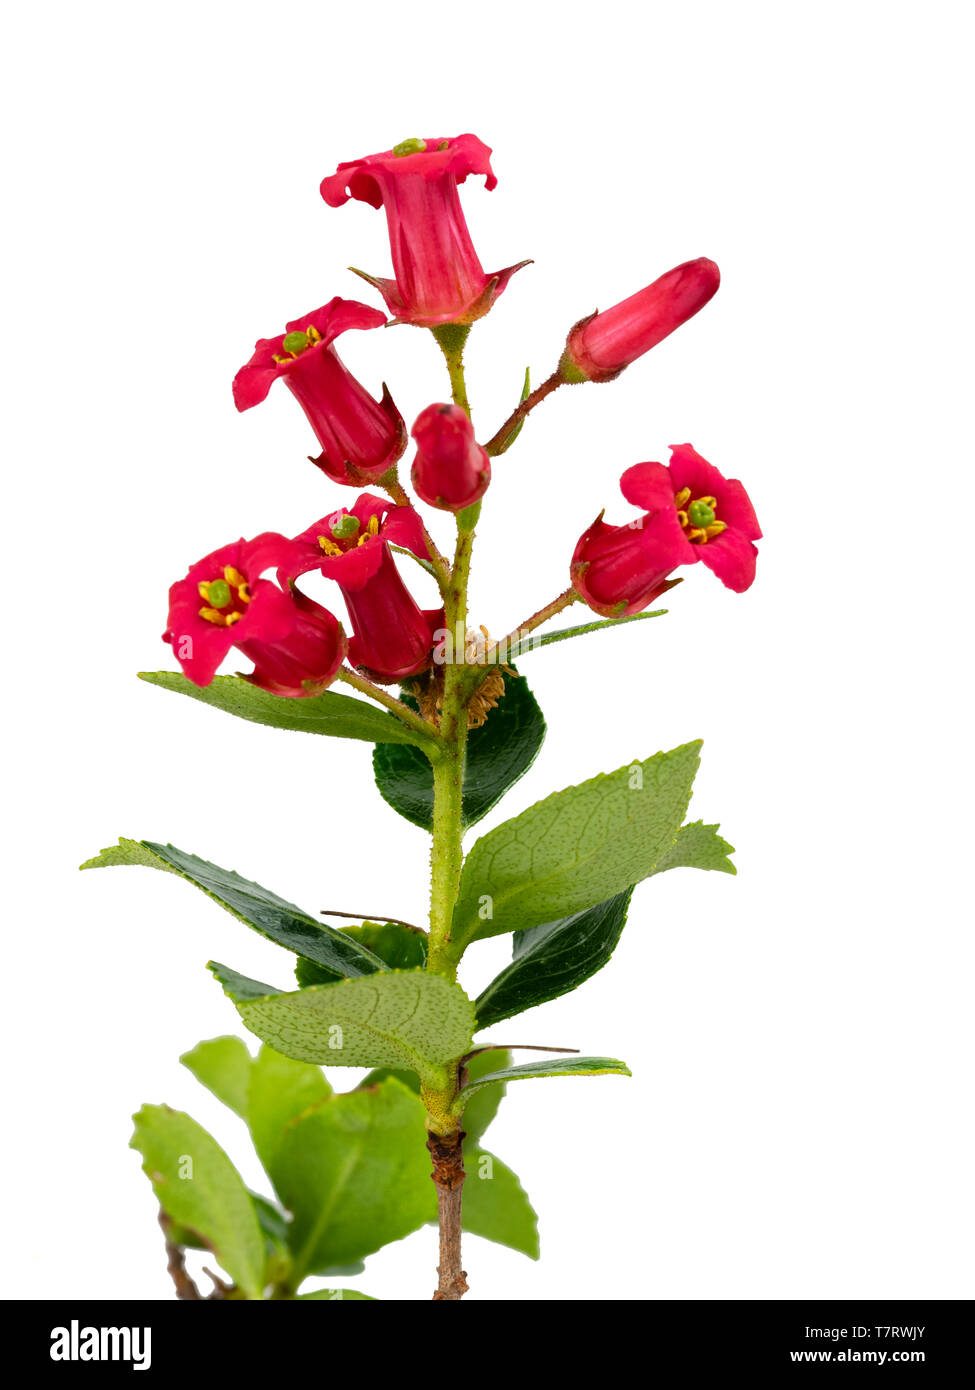 Wind und Salz tolerant immergrünen Laub und rot-rosa Blüten der Hardy hedging Strauch, Escallonia rubra var. macrantha Stockfoto